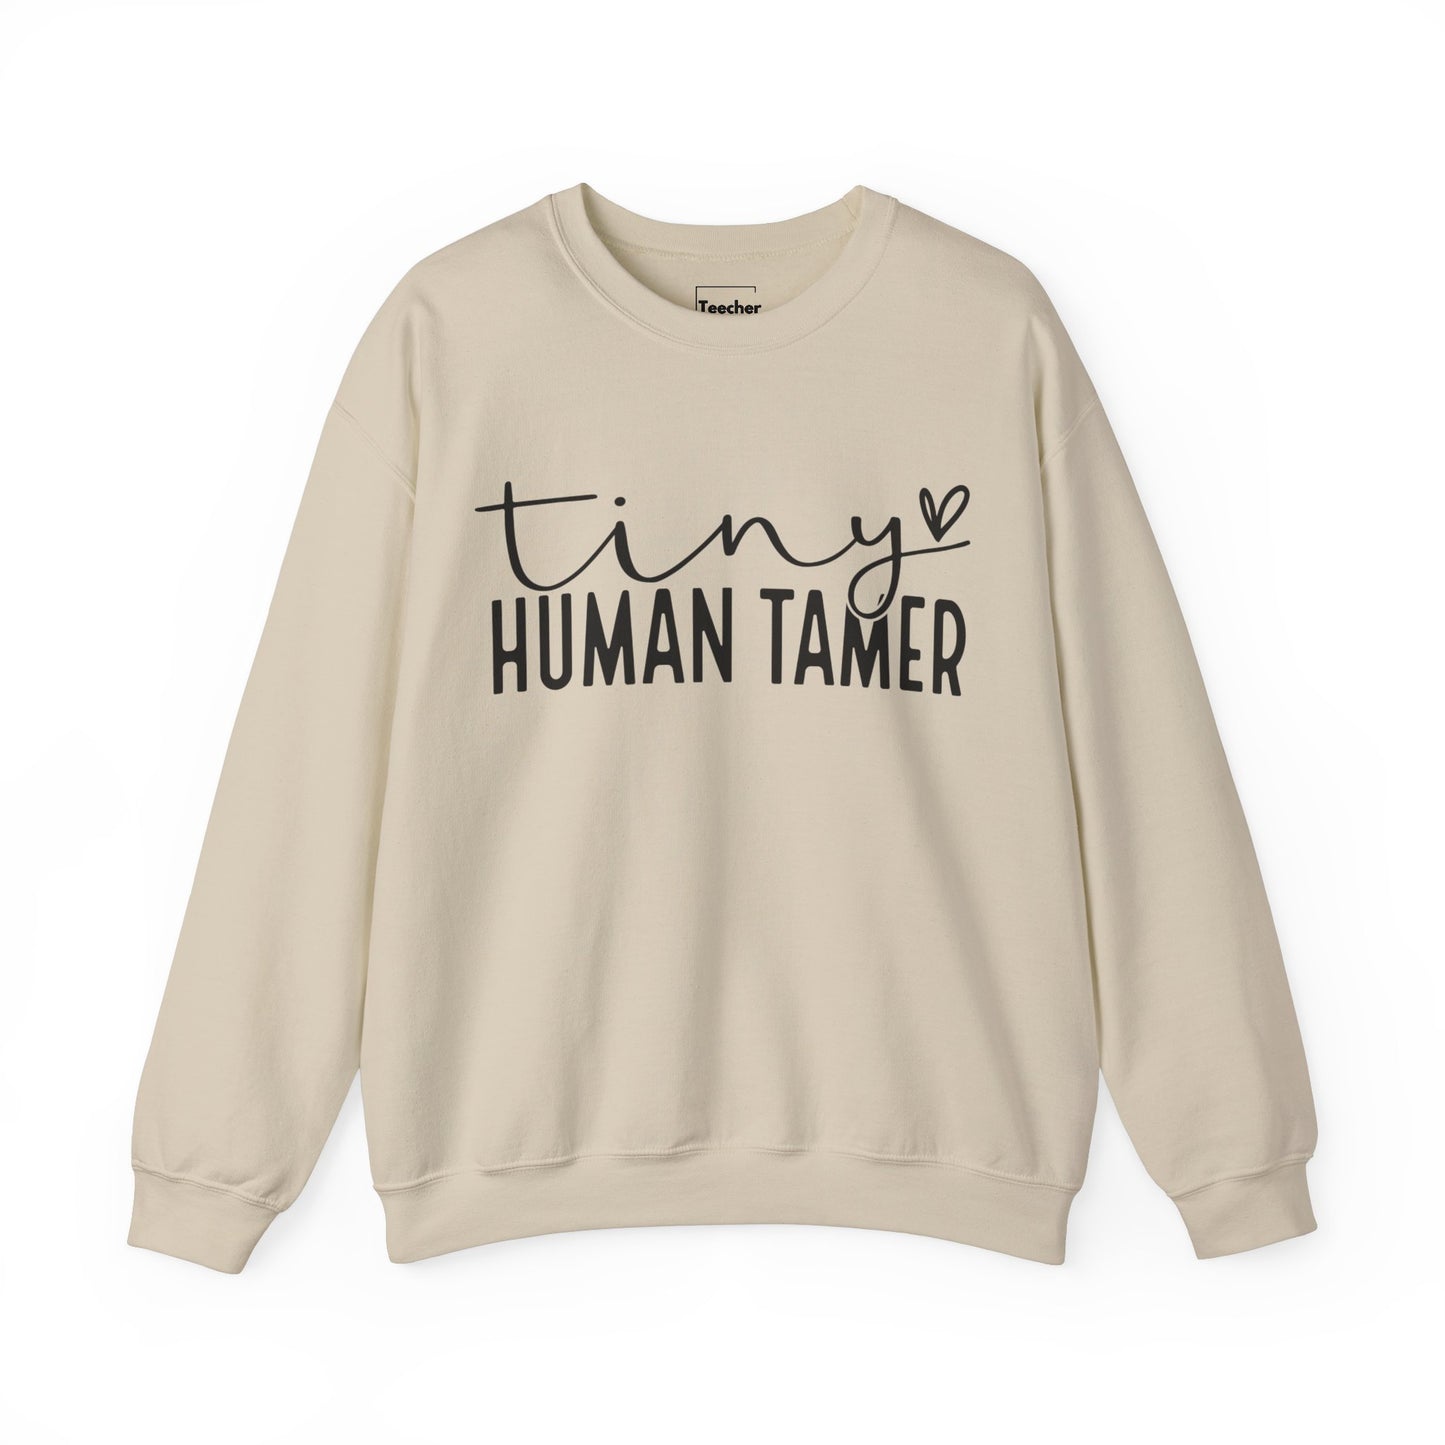 Human Tamer Sweatshirt